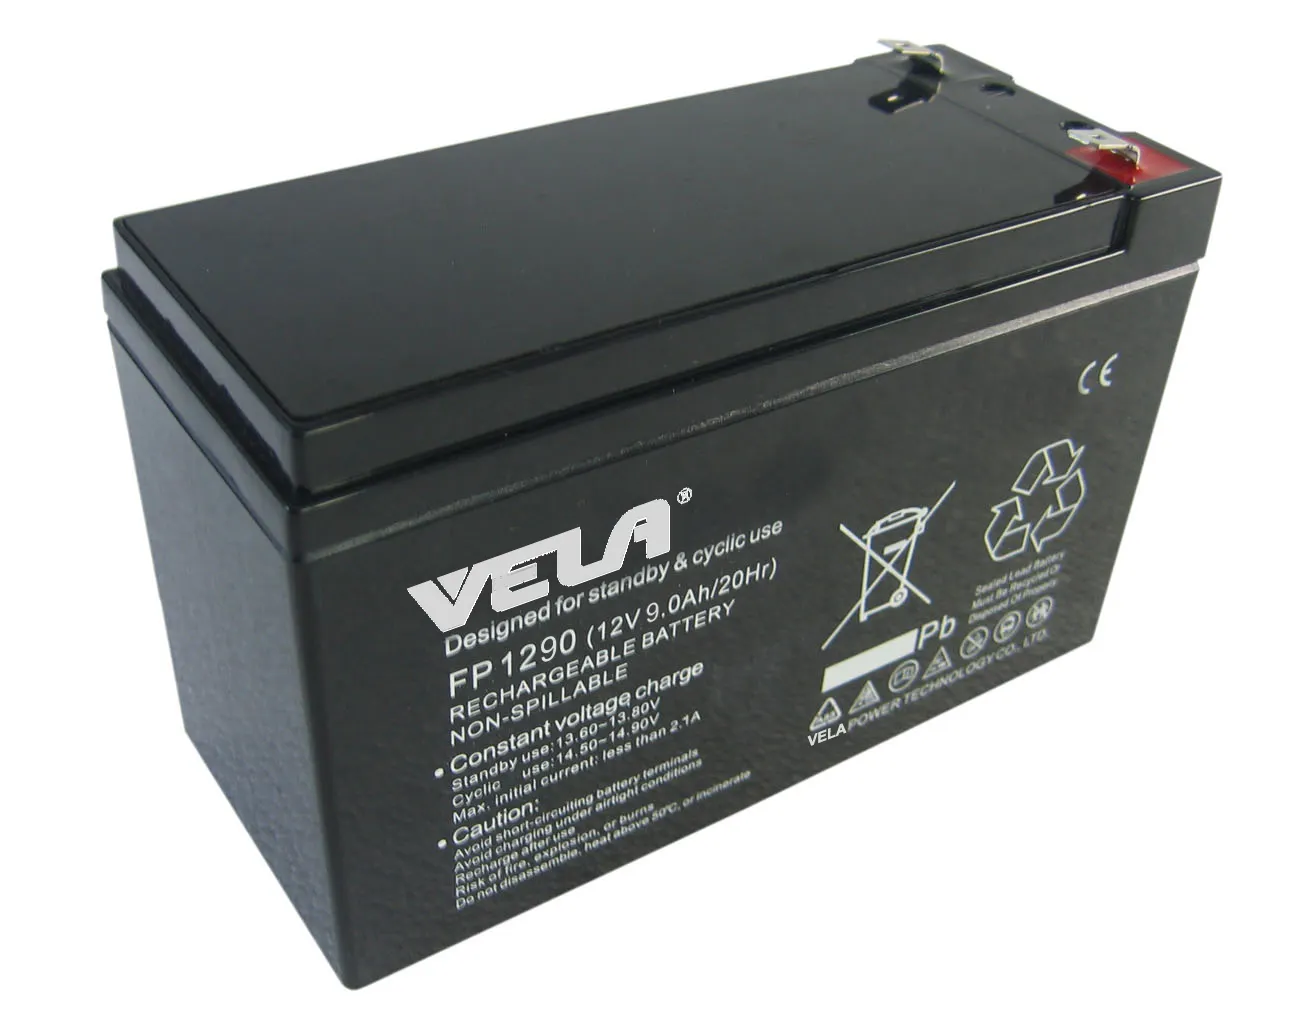 12V 9ah Sealed Lead Acid Battery for APC BACK-UPS CS 350 BK350 UB1290 Free CE 12 Volt Price Solar Battery VELA VRLA Battery 100%